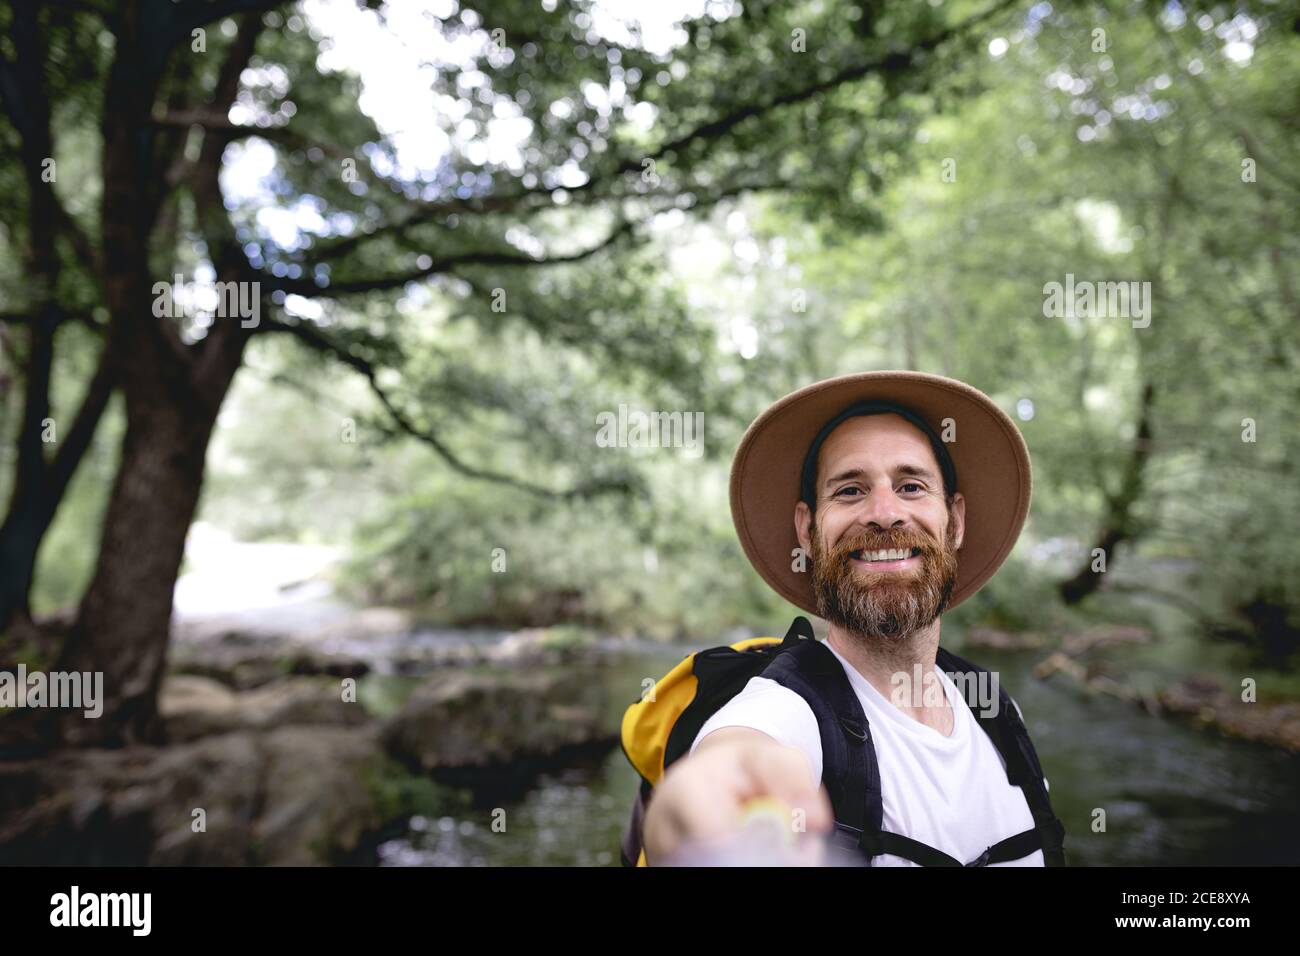 Junger Mann mit Barthut auf dem Kopf und gelb Rucksack Wandern auf einer Seenroute mit Bäumen und schattig Bereiche, die ein Selfie machen Stockfoto